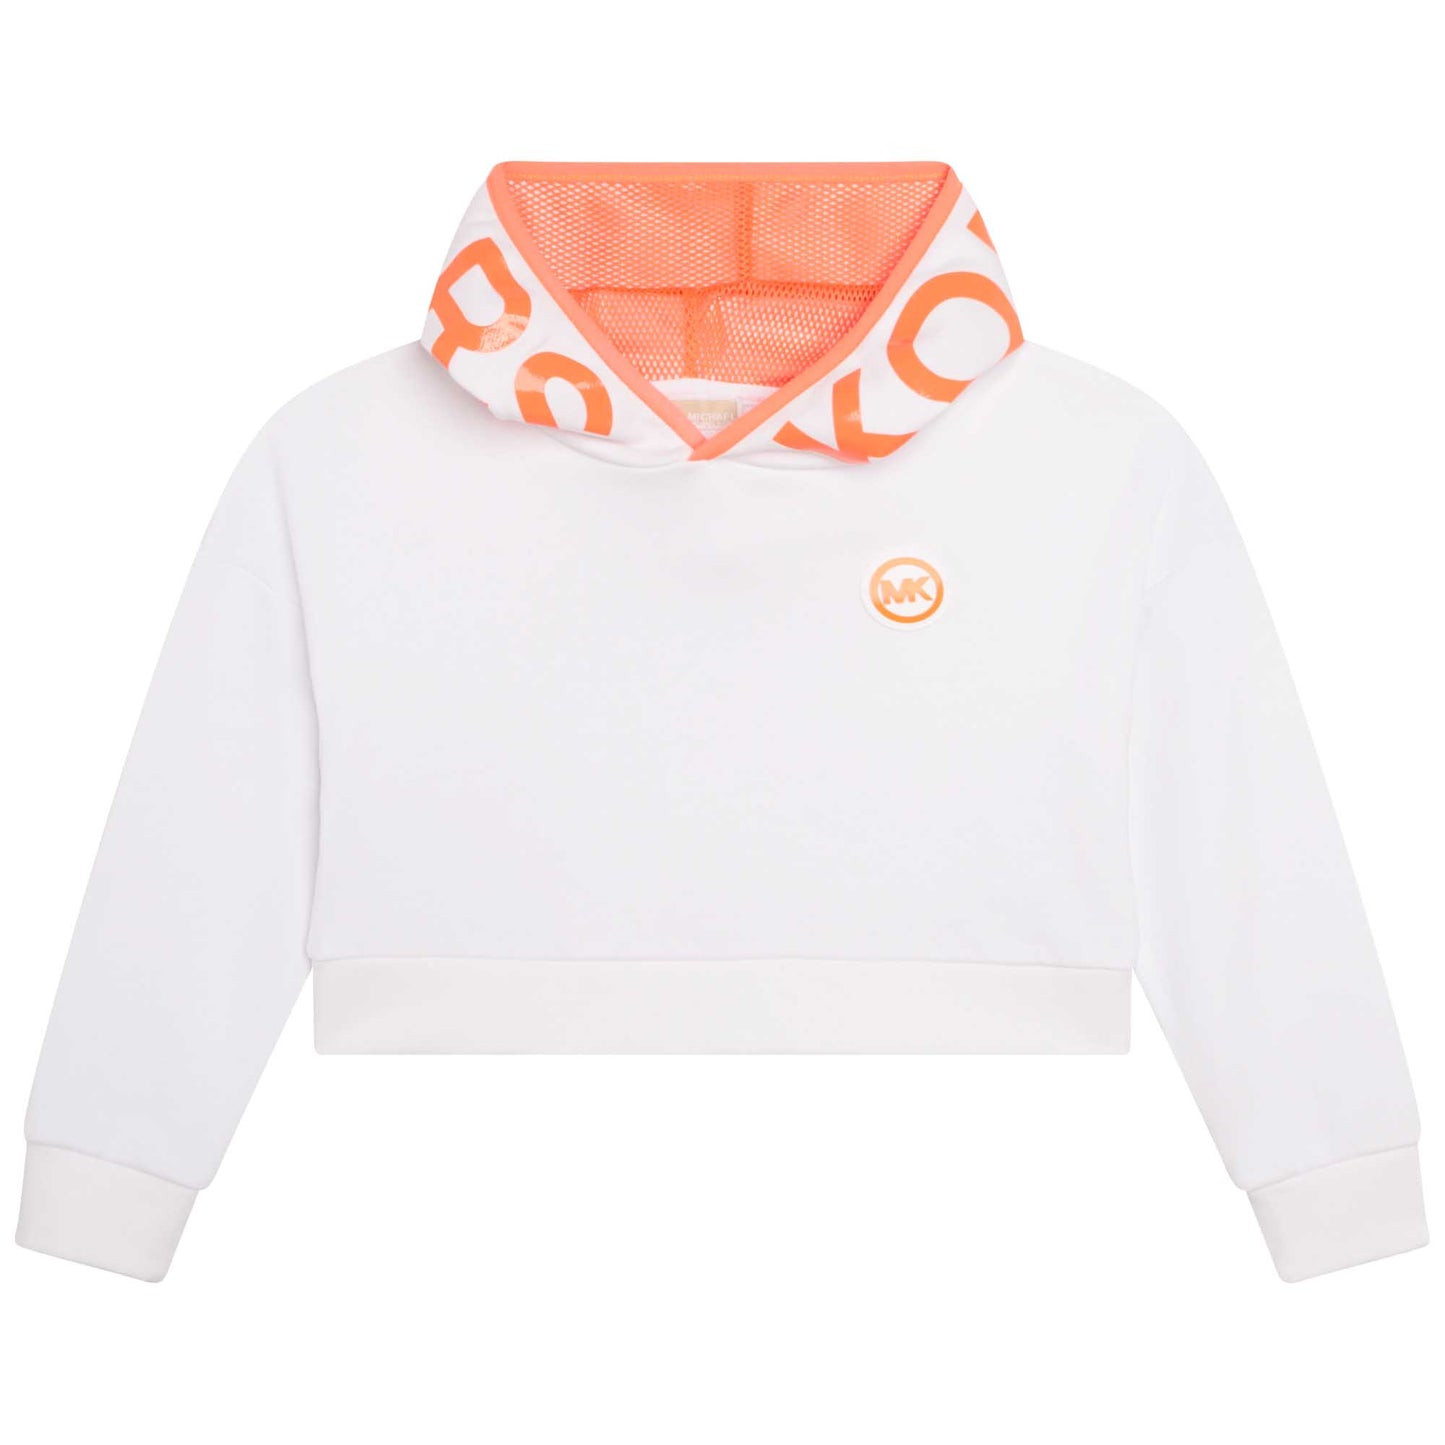 Michael Kors White/Peach Sweatshirt